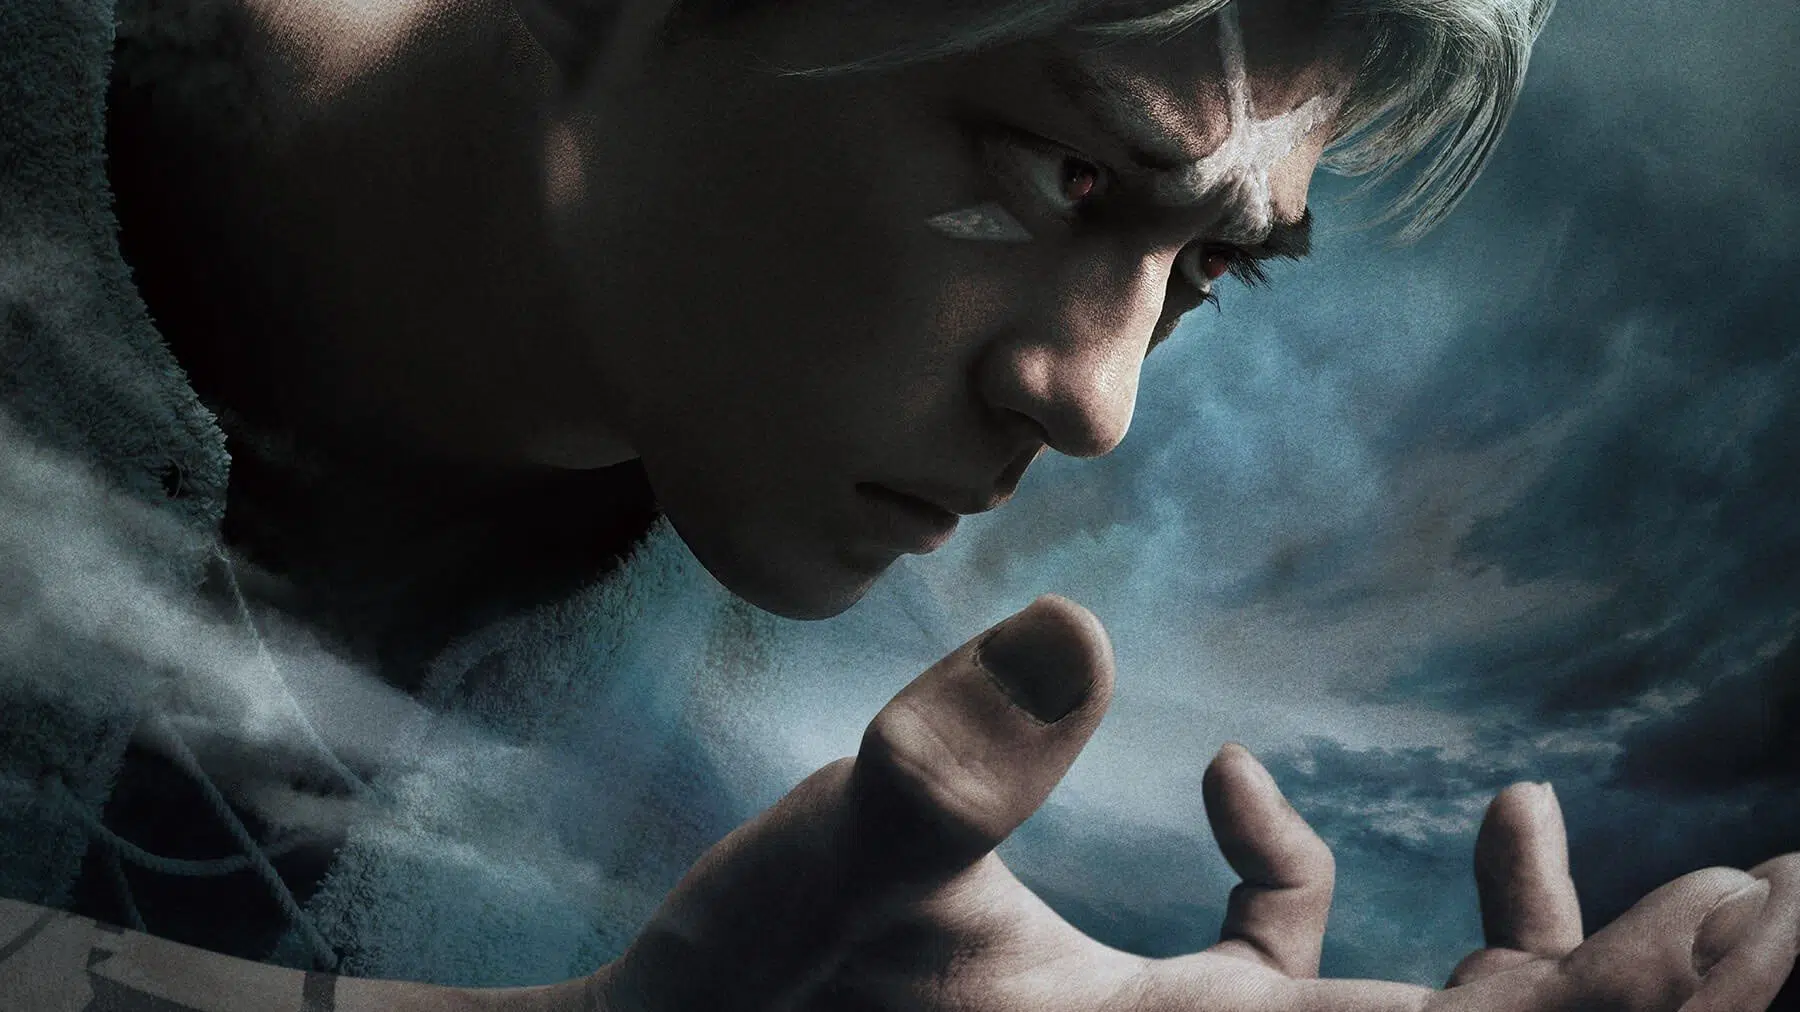 Fullmetal Alchemist ganhará dois filmes live-action; veja trailer!